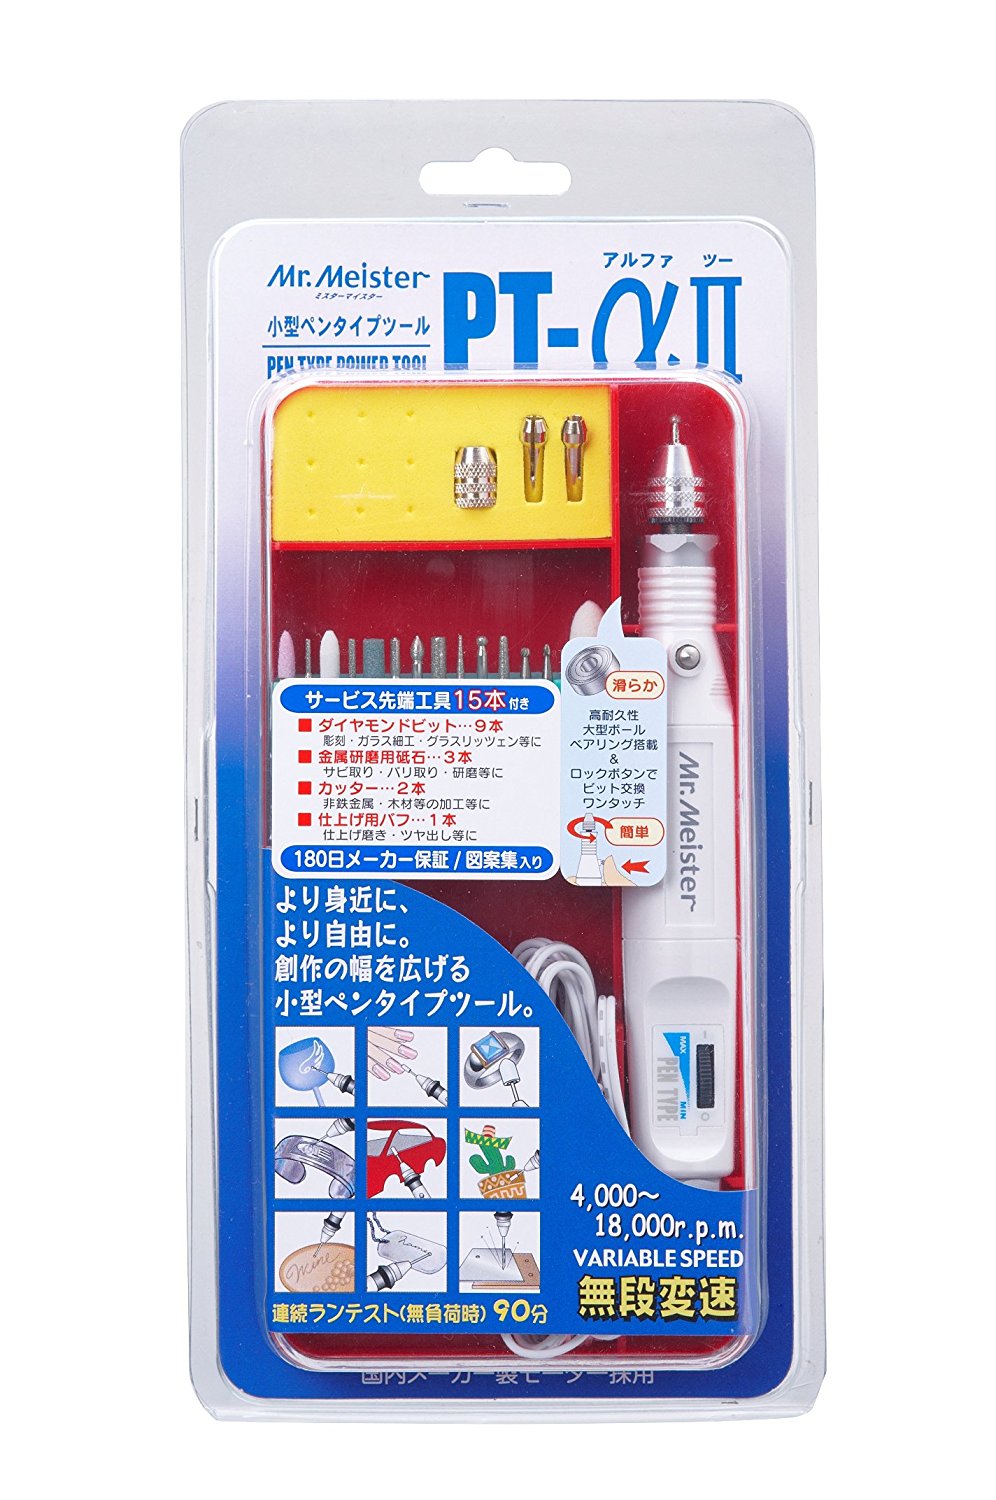 Mr.Meister PT-alpha 2 - Pen type power tool